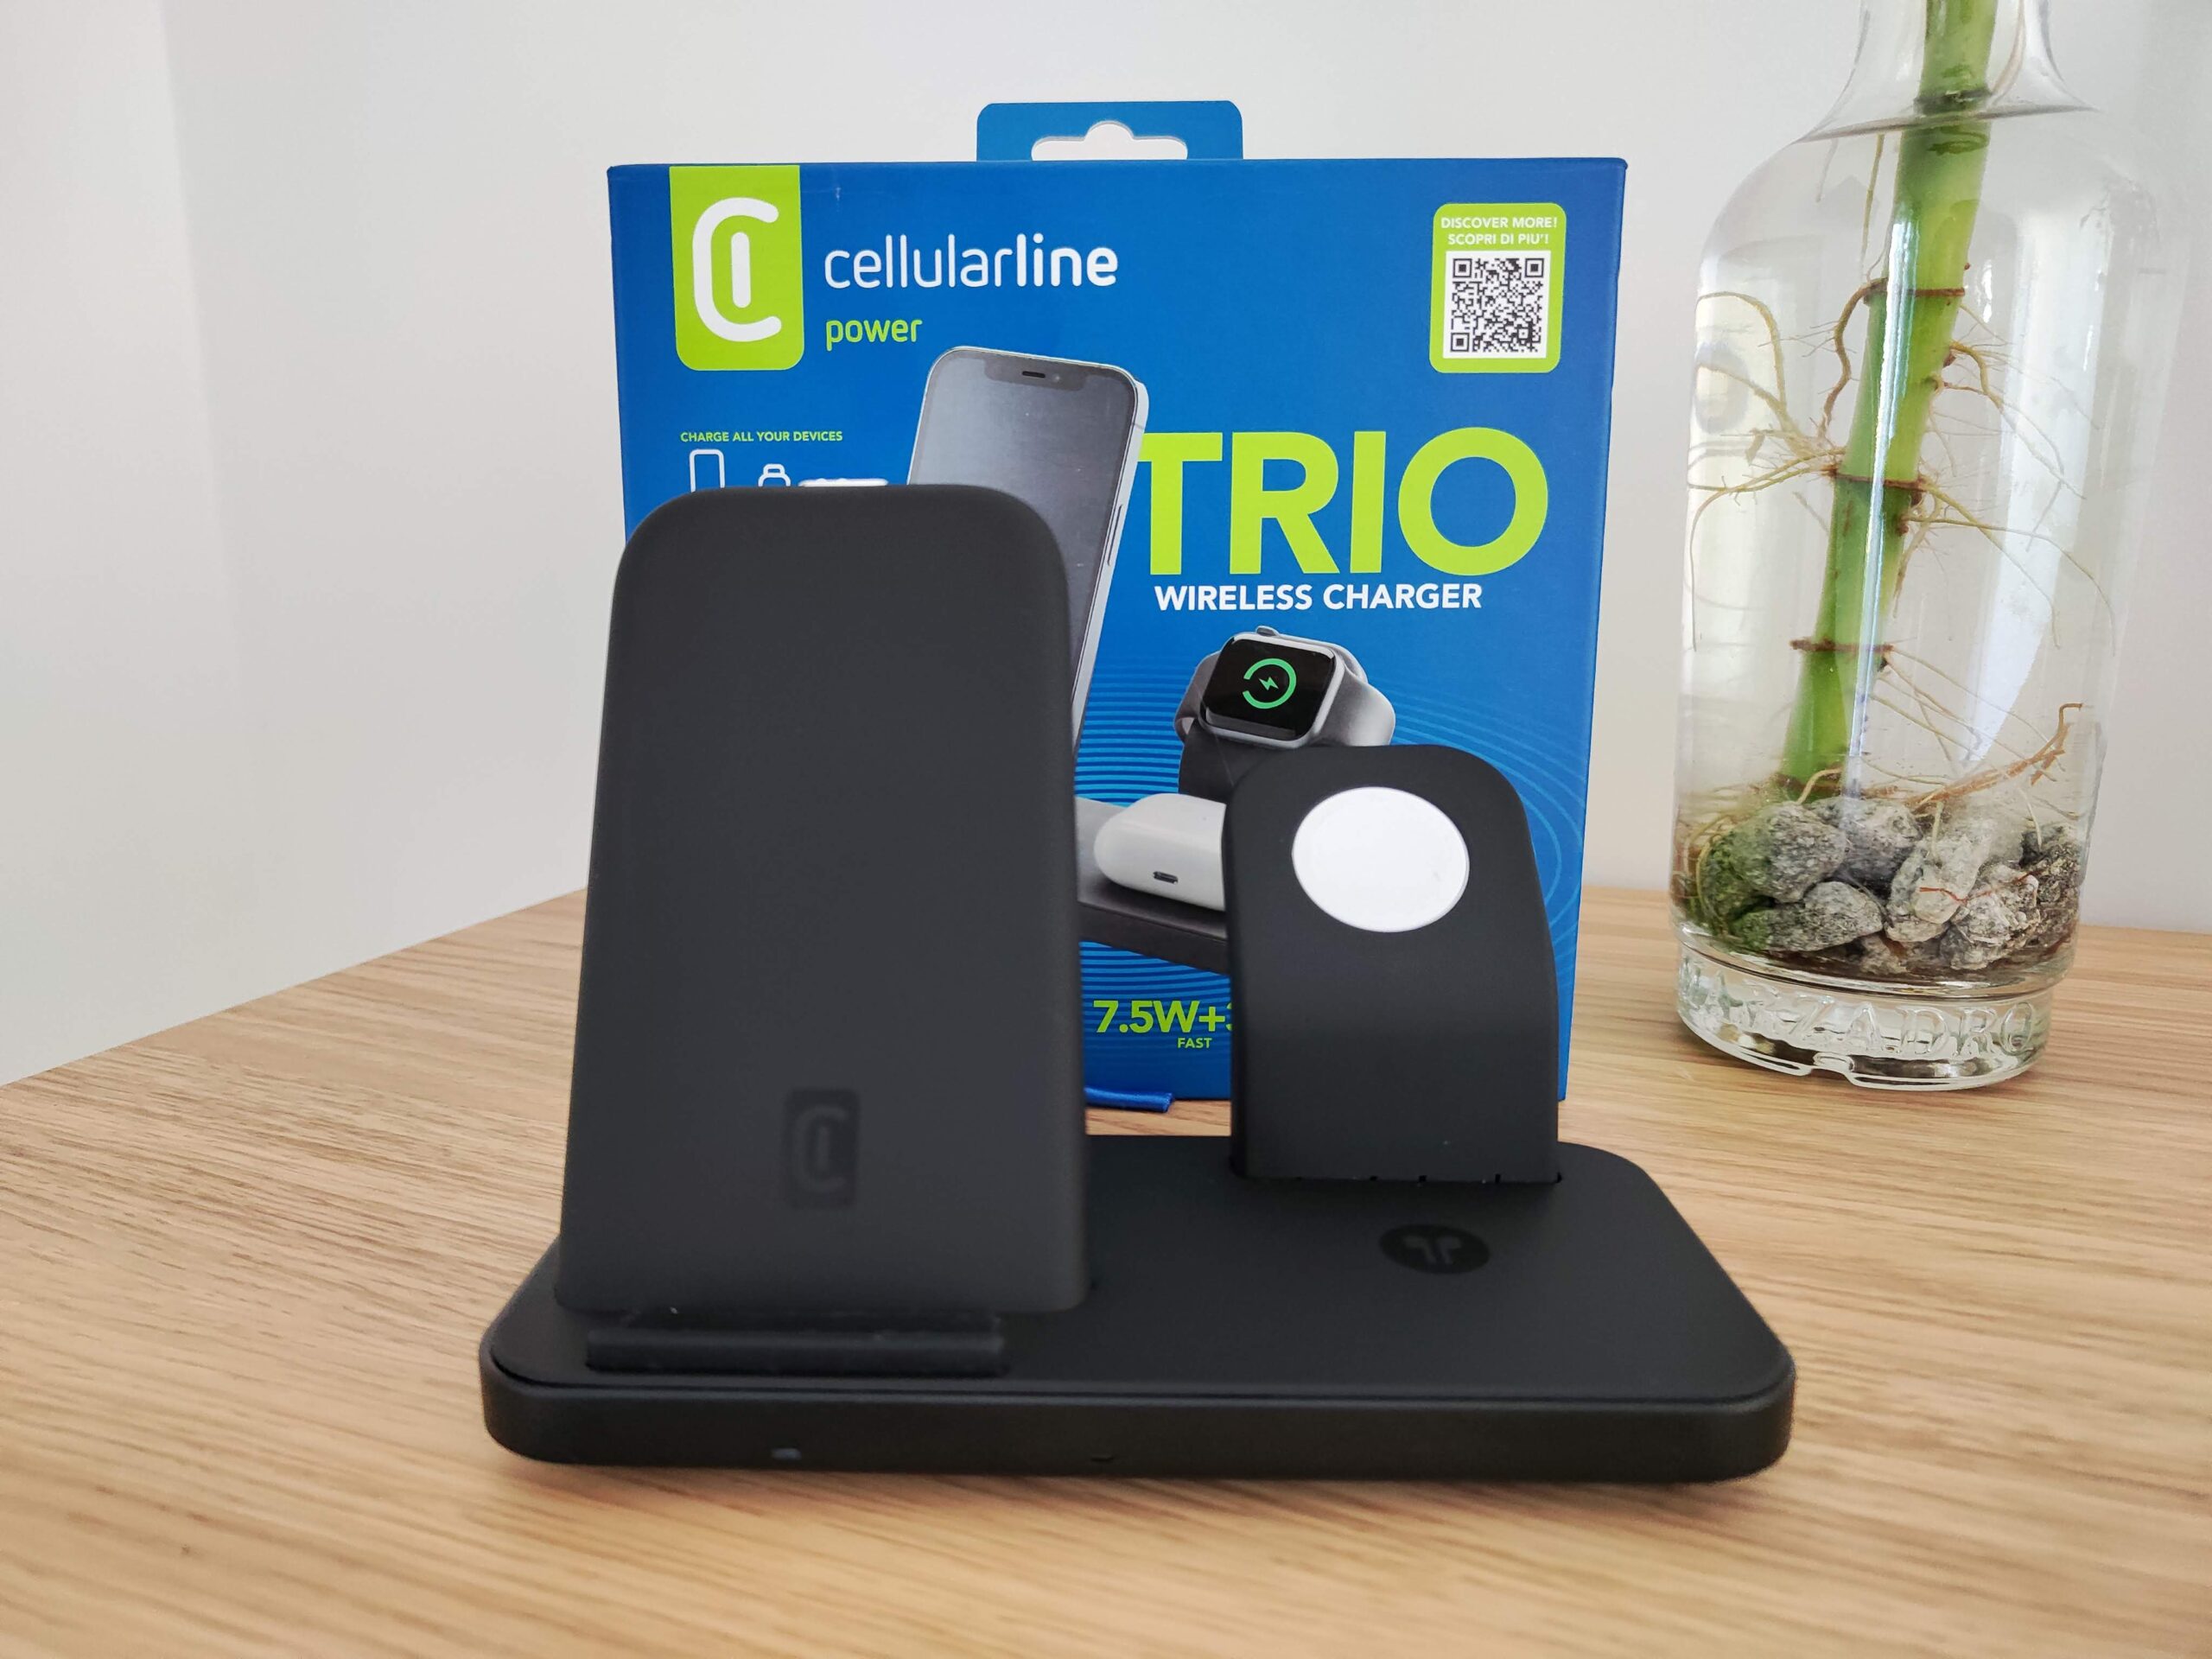 Recensione Trio Wireless Charger, da Cellularline la soluzione di ricarica tutto in uno per dispositivi Apple